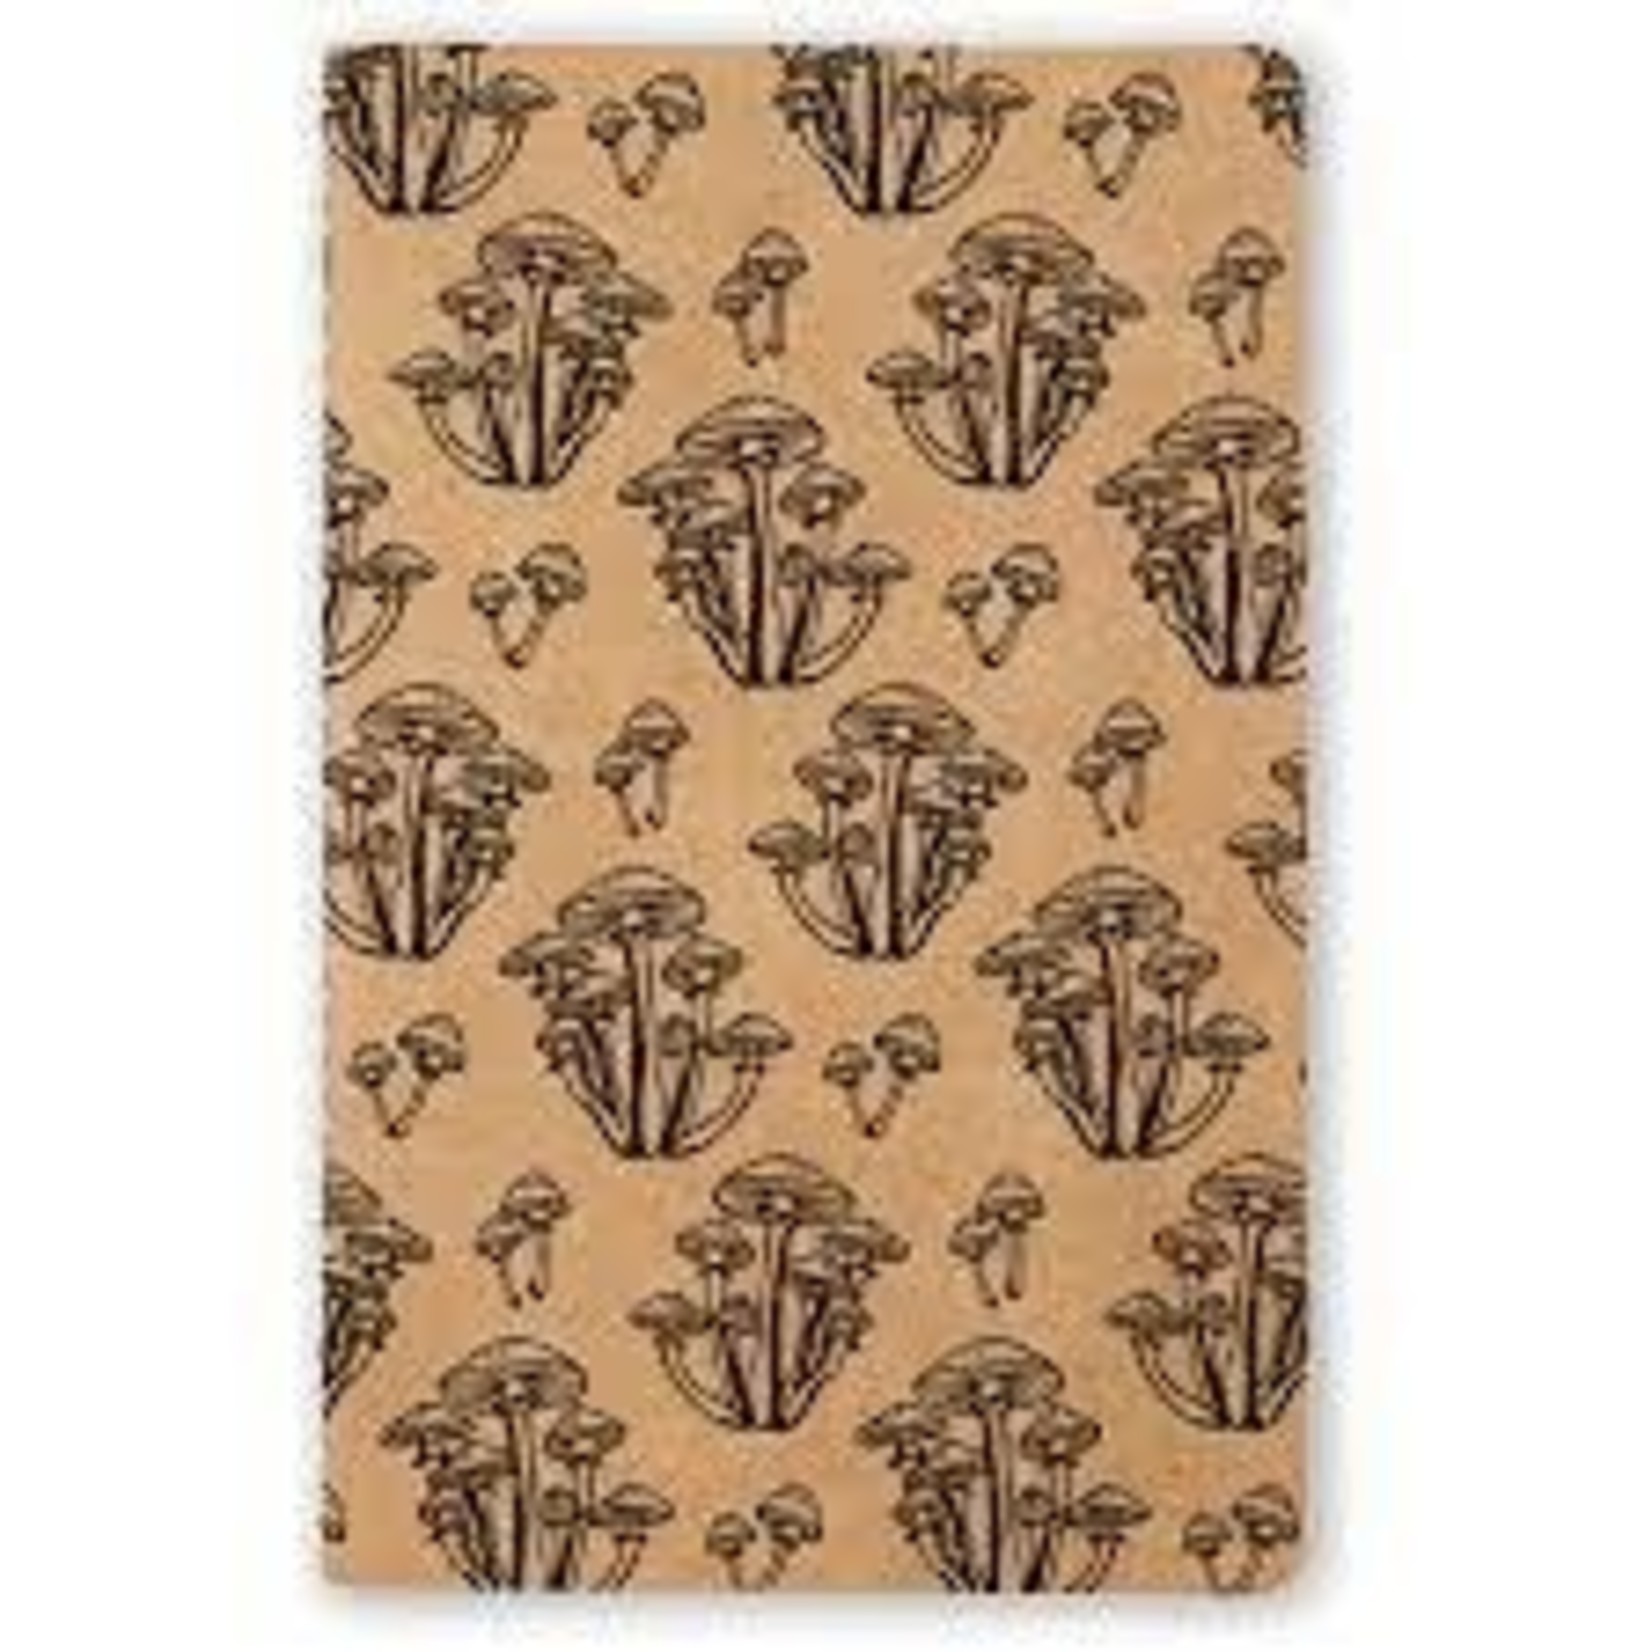 Denik "Wild Mushroom" Kraft Lined Notebook